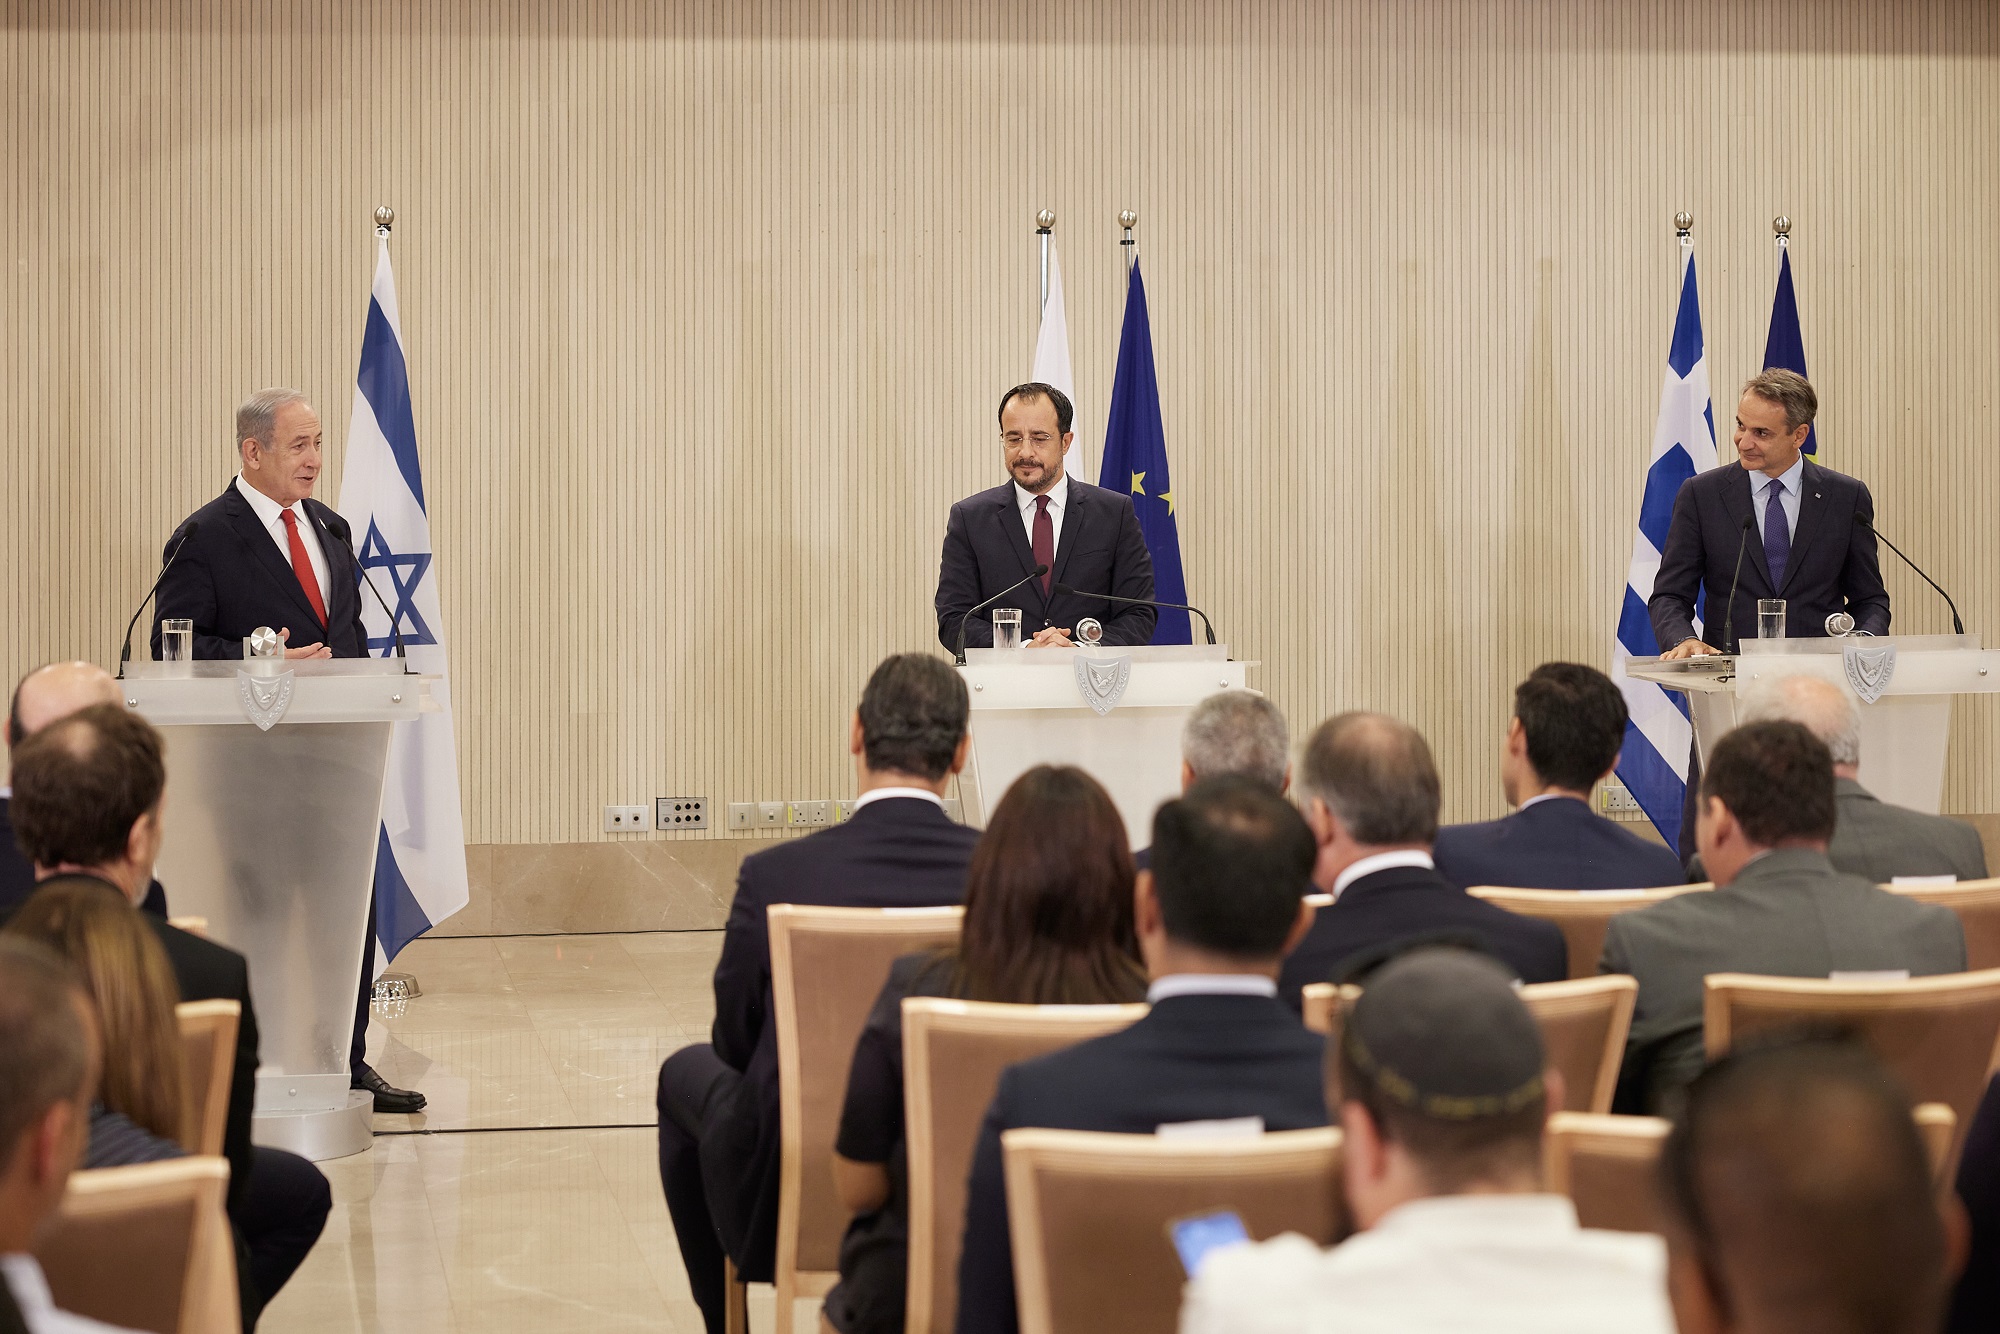 Σύνοδος Ελλάδας – Κύπρου – Ισραήλ: Στην κορυφή της ατζέντας η τριμερής συνεργασία και η επανεκκίνηση στις ελληνοτουρκικές σχέσεις